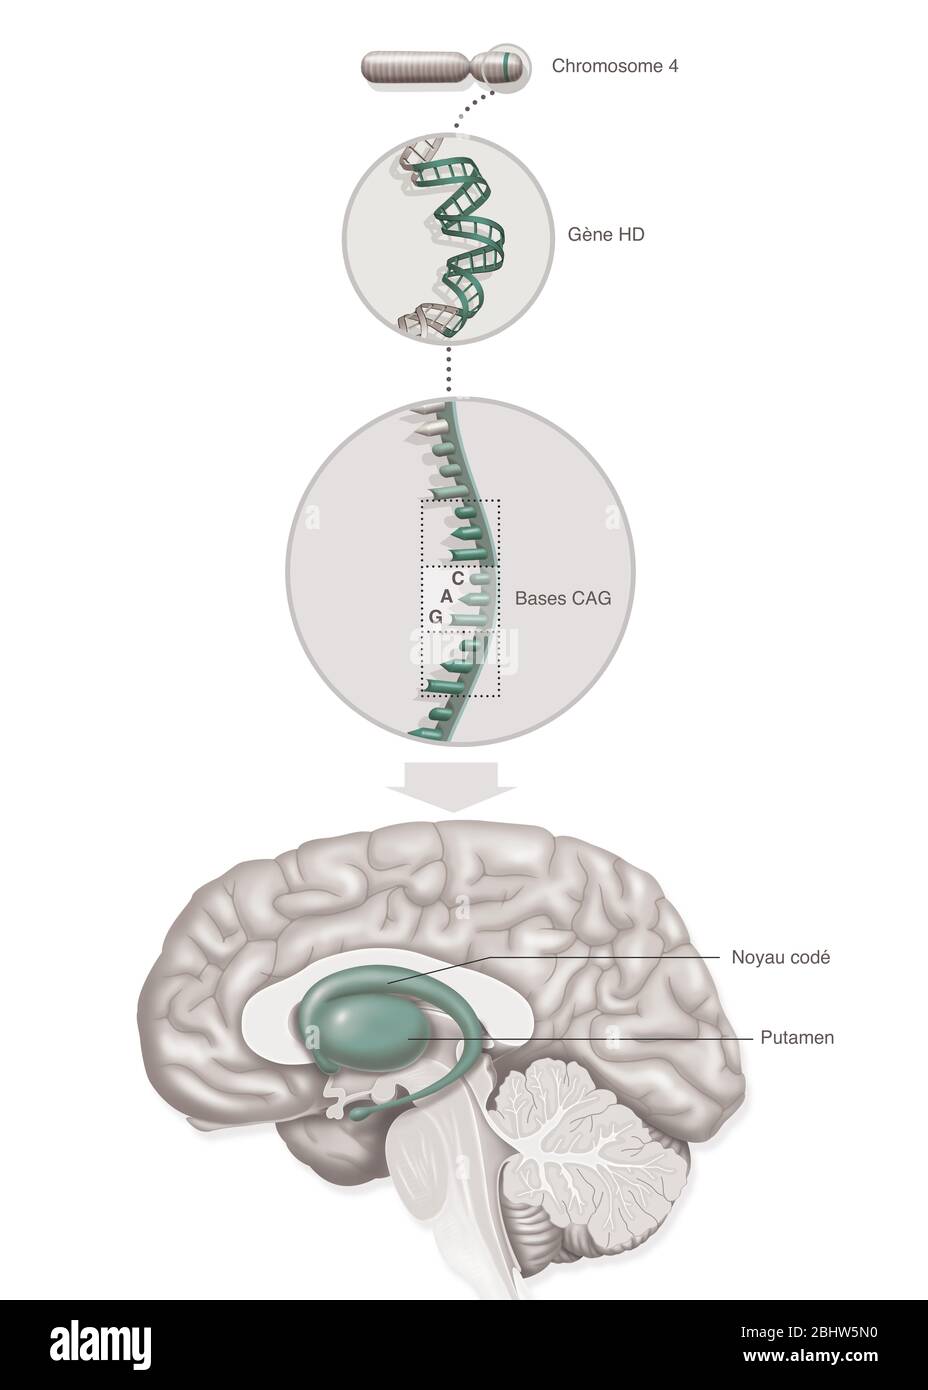 Illustrazione medica che rappresenta la malattia di Huntington, un disturbo genetico che coinvolge il gene HD (malattia di Huntington) del cromosoma 4 con re anormale Foto Stock